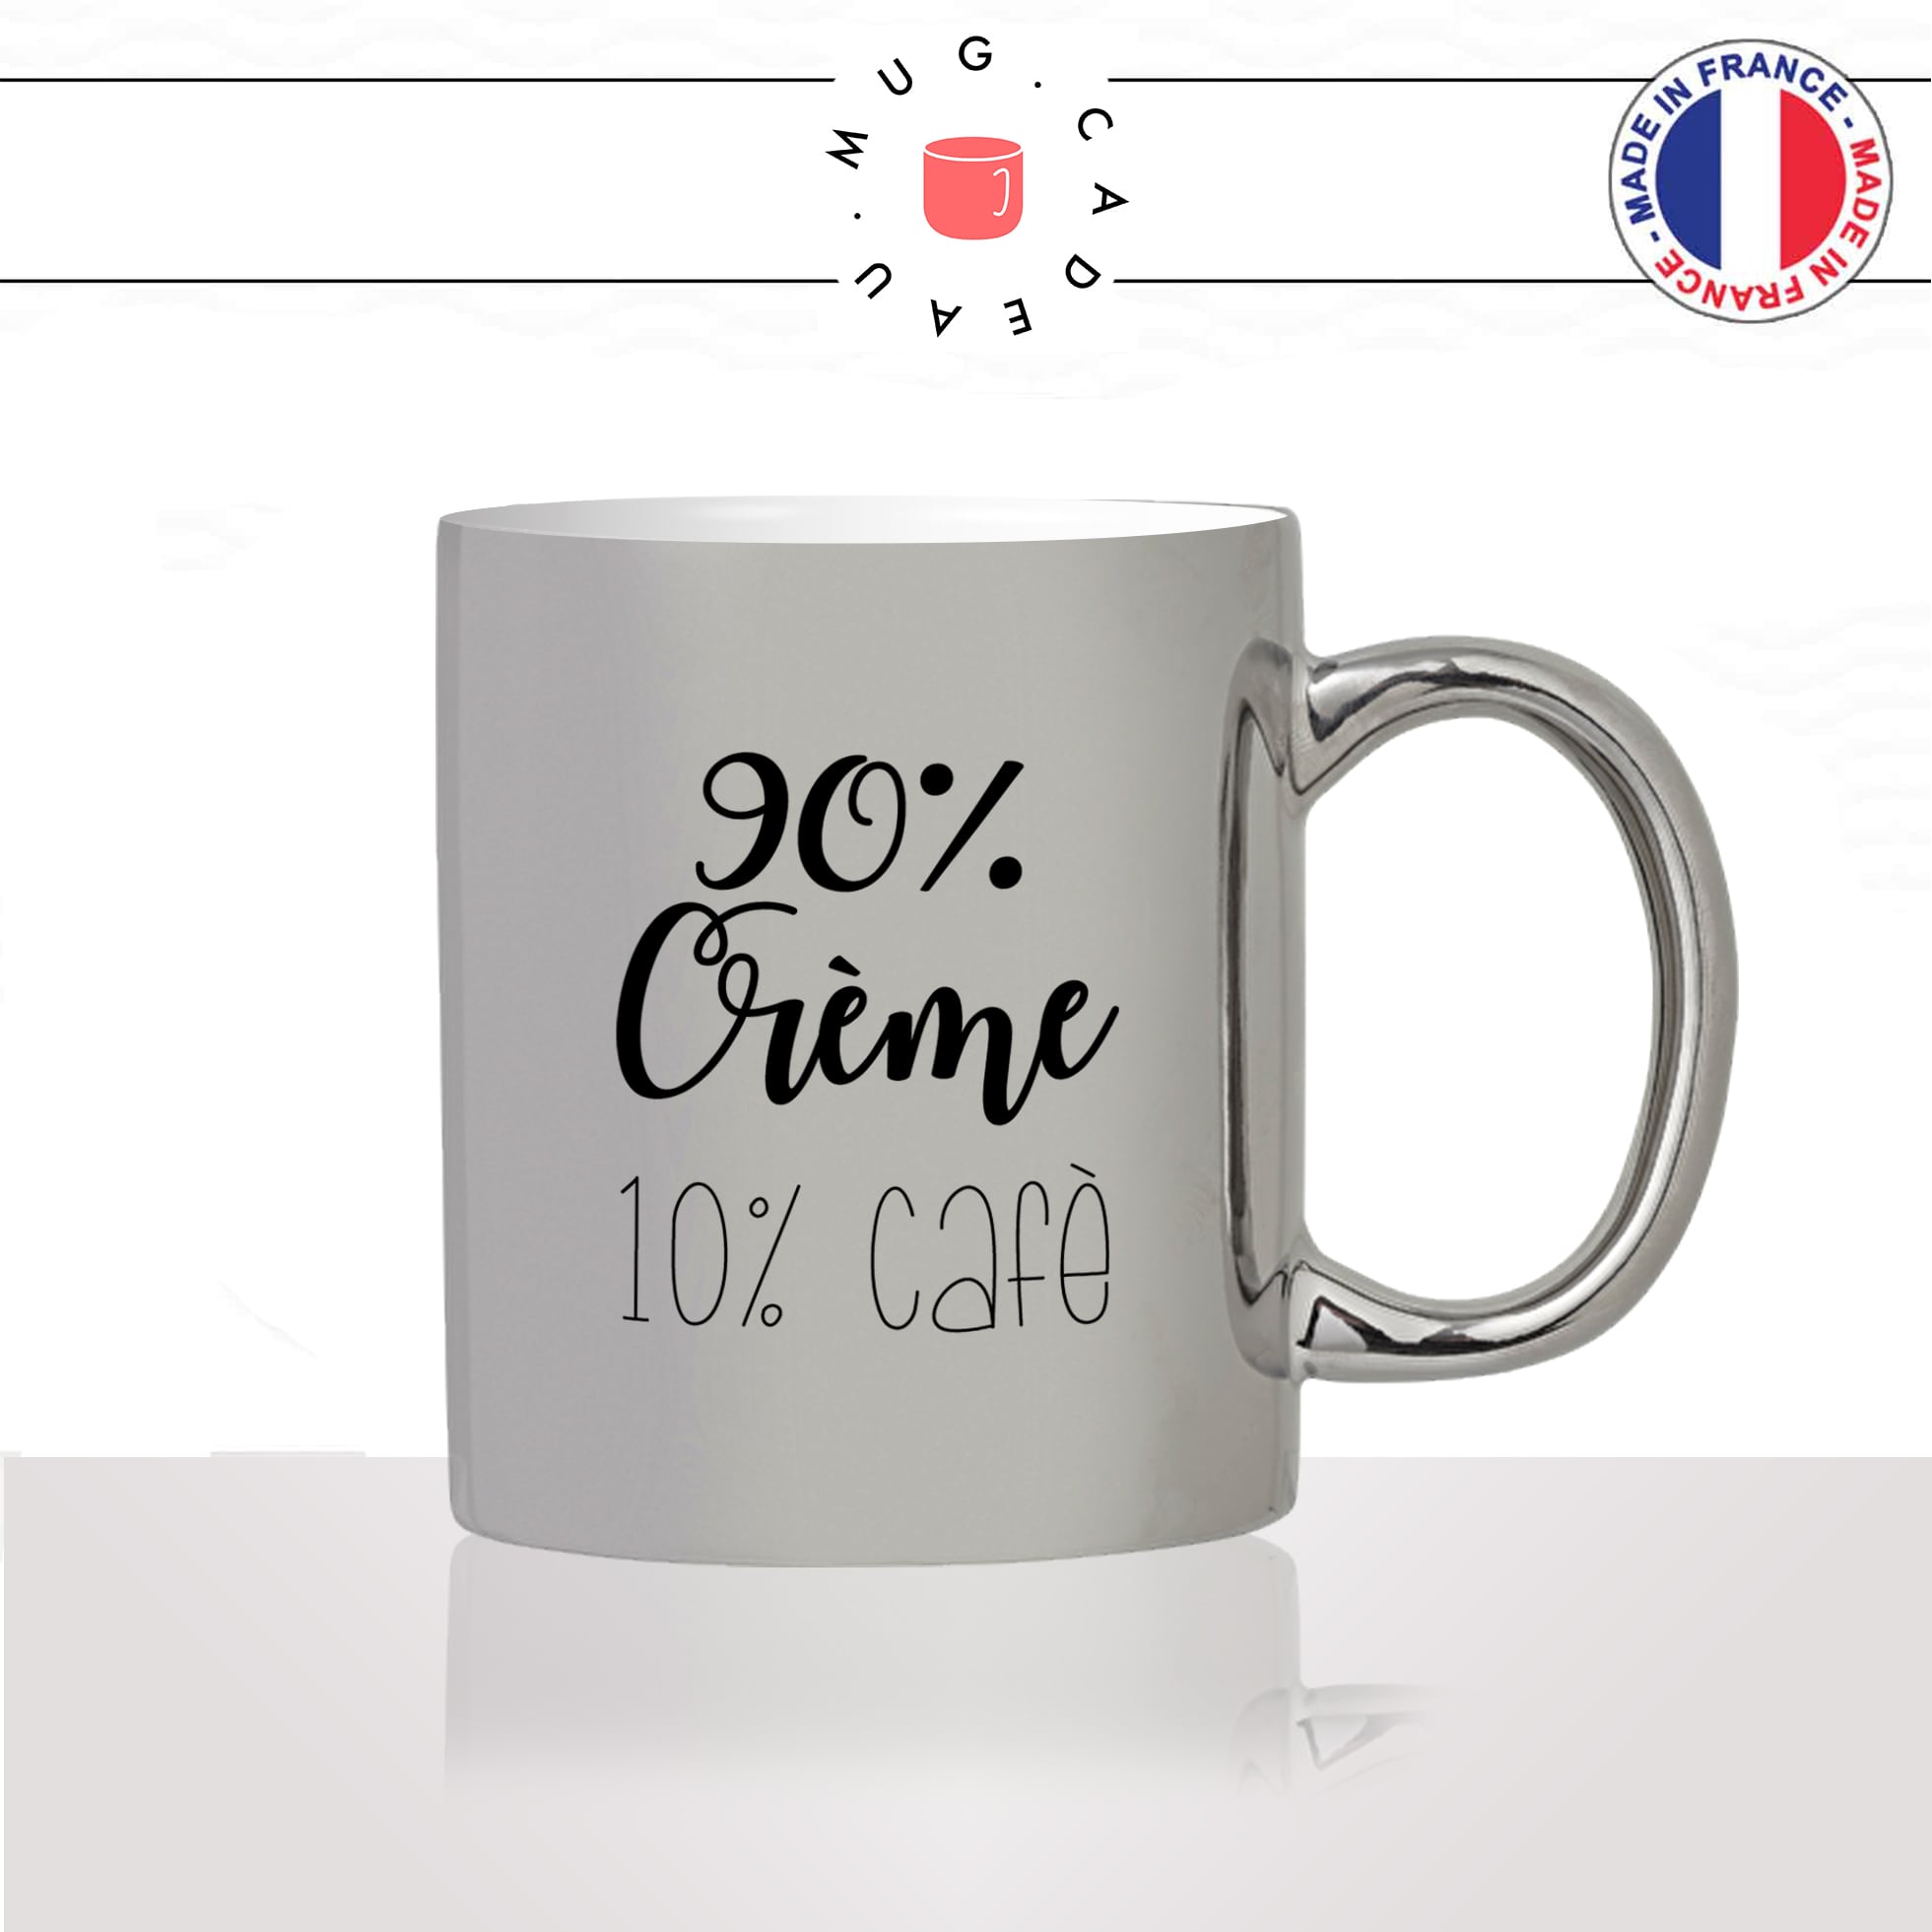 mug-tasse-silver-argenté-argent-cafe-crème-lait-macchiato-latte-cappuccino-humour--amour-idée-cadeau-original-personnalisé-café-thé2-min